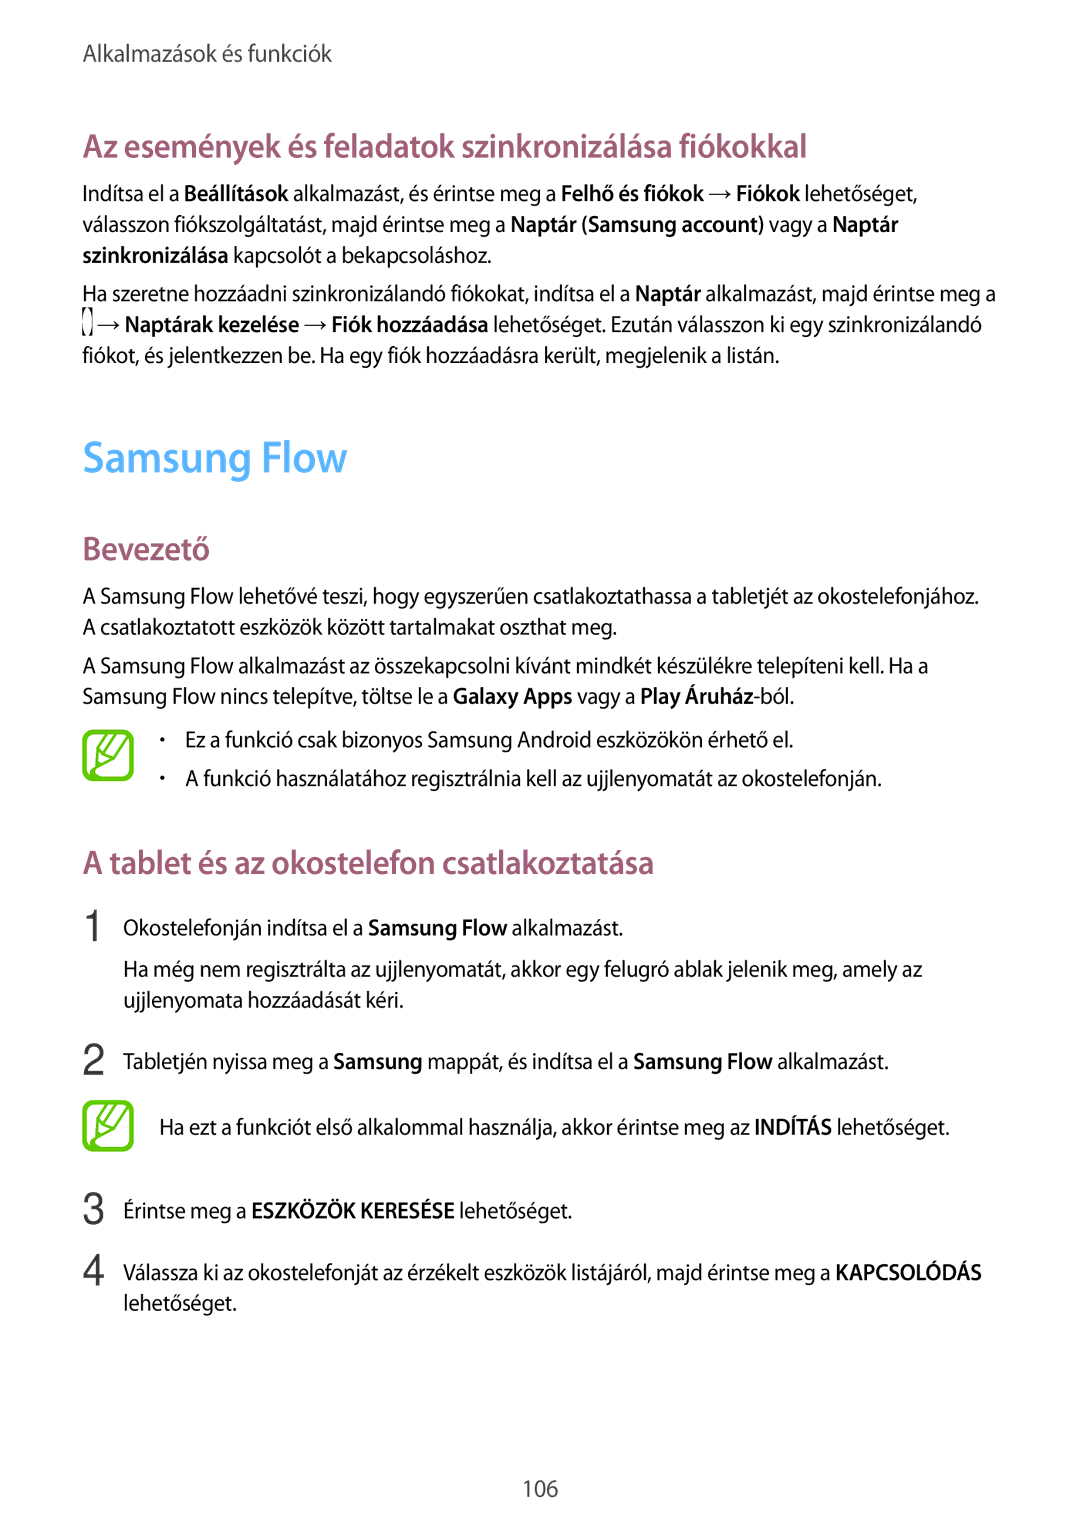 Samsung SM-T395NZKAXSK, SM-T395NZKAXEZ, SM-T395NZKAEUR Samsung Flow, Az események és feladatok szinkronizálása fiókokkal 